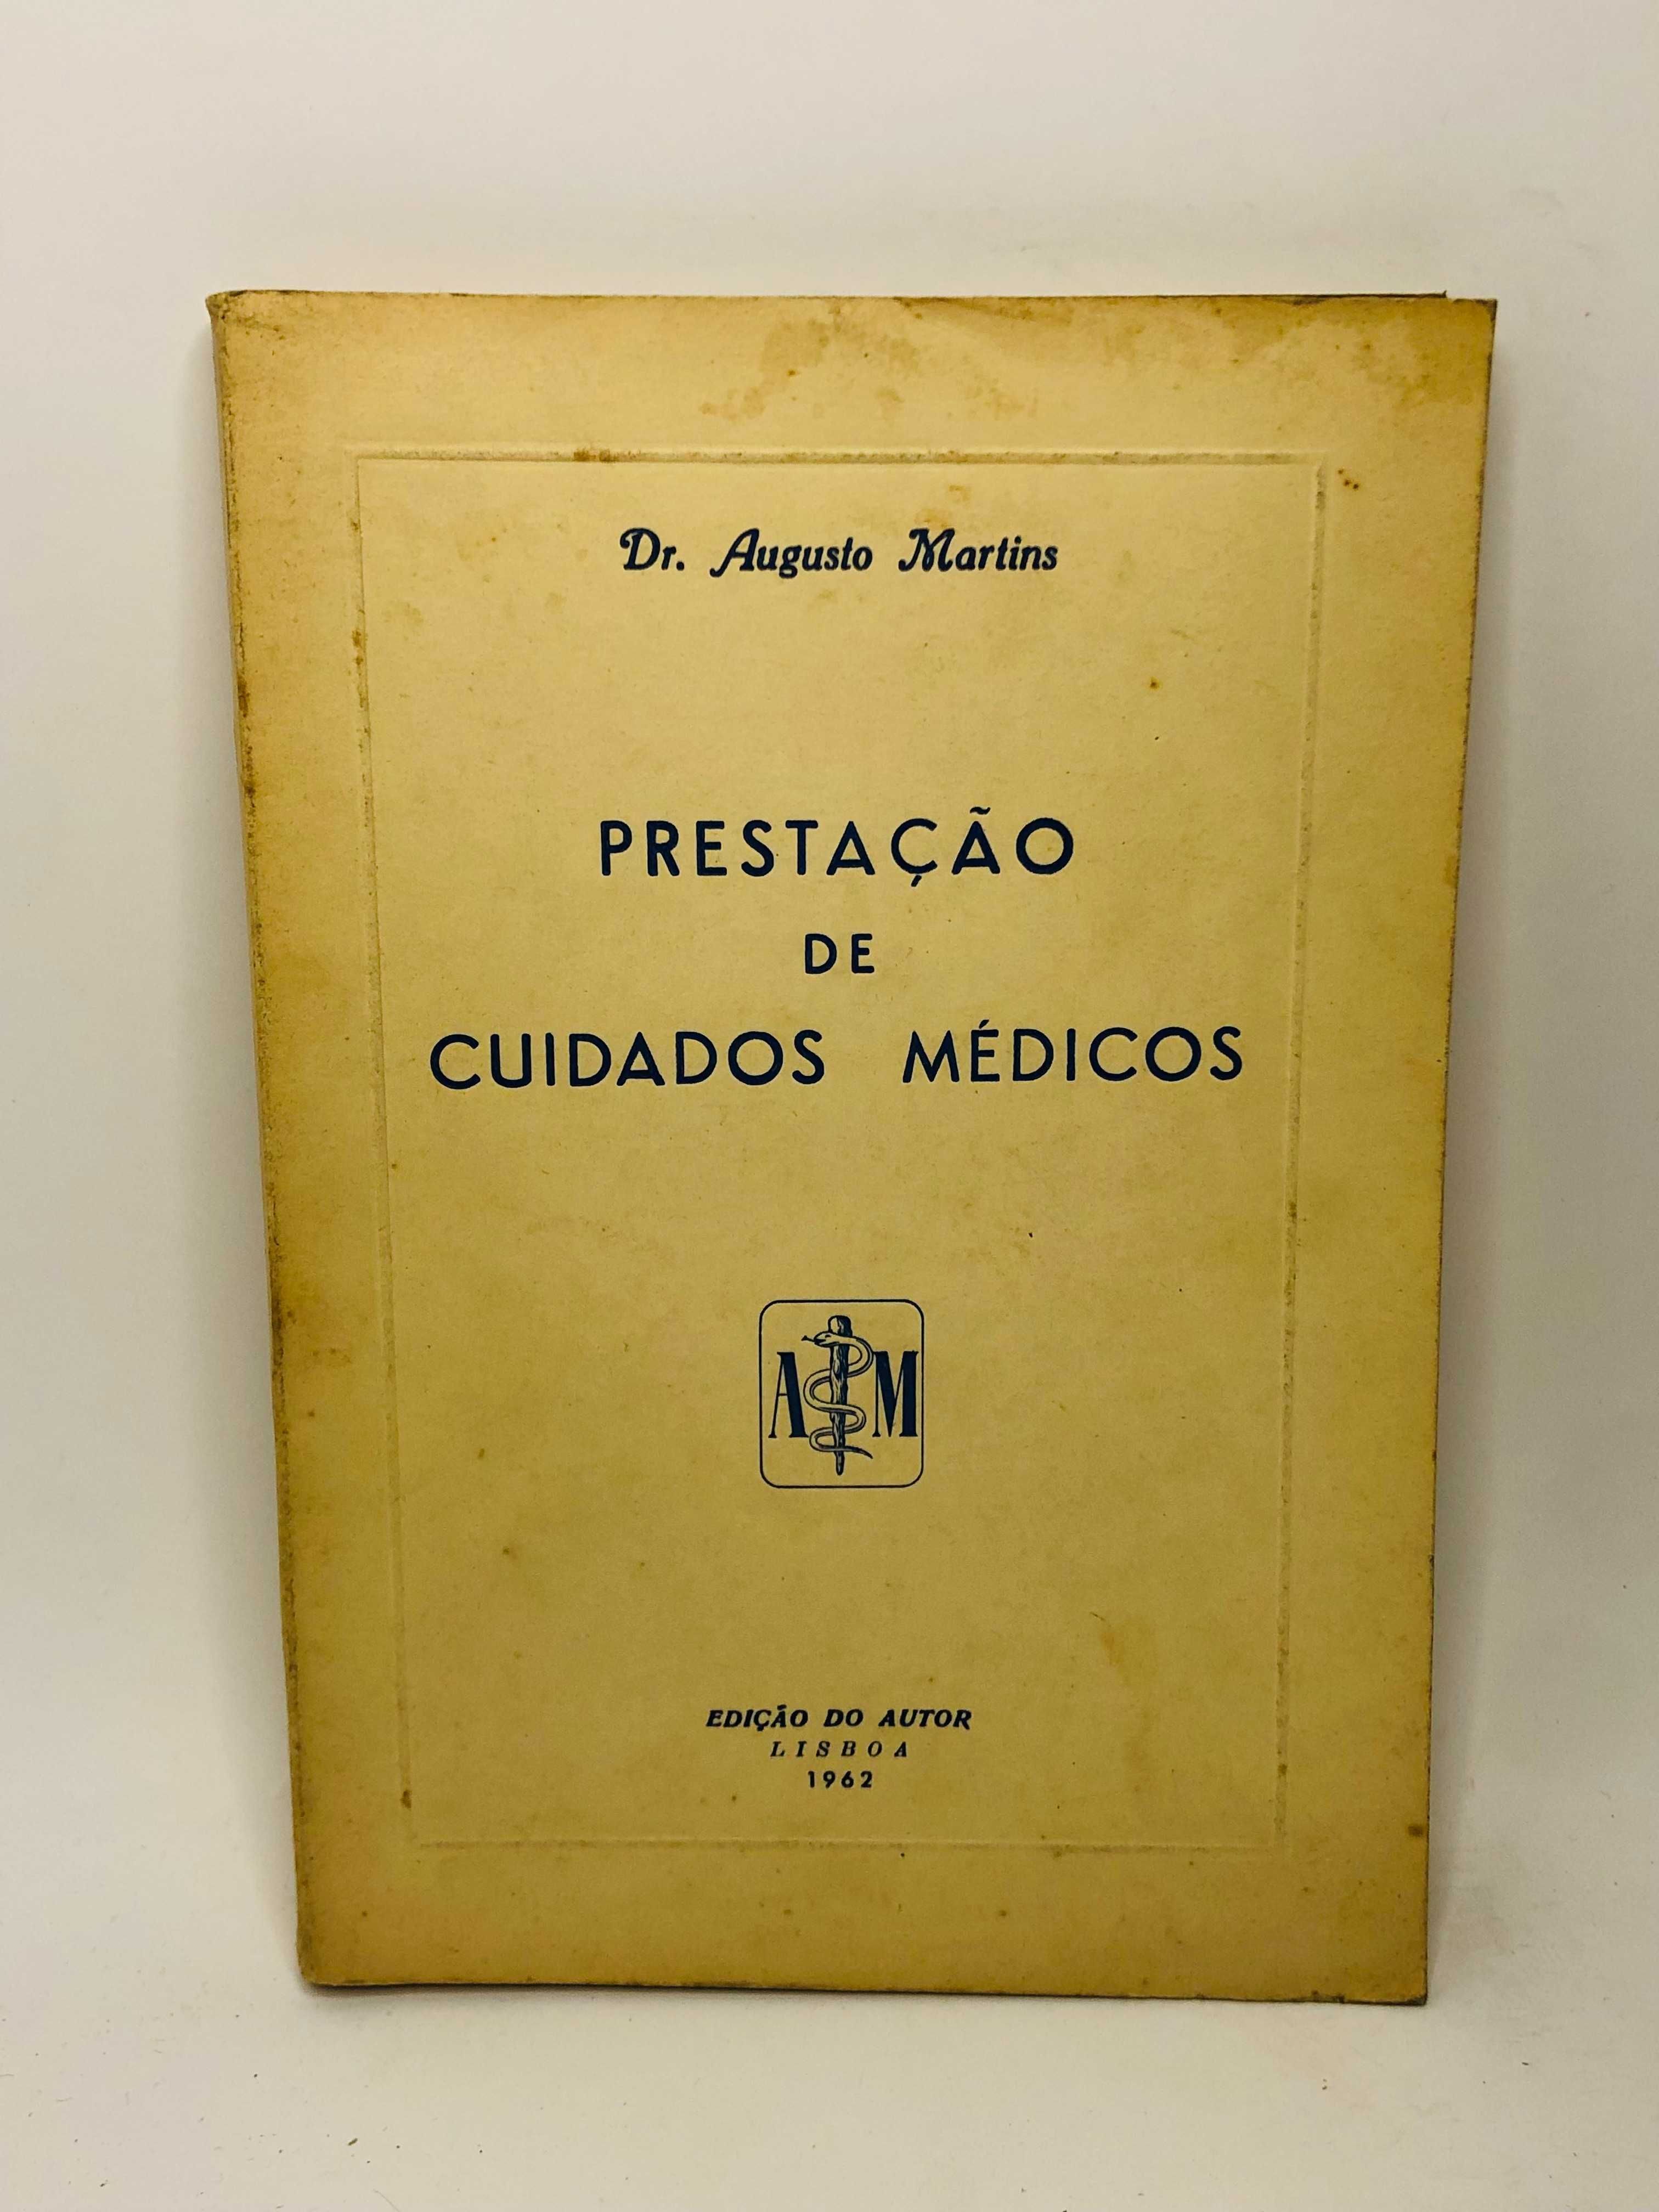 Prestação de Cuidados Médicos 1962 - Dr. Augusto Martins